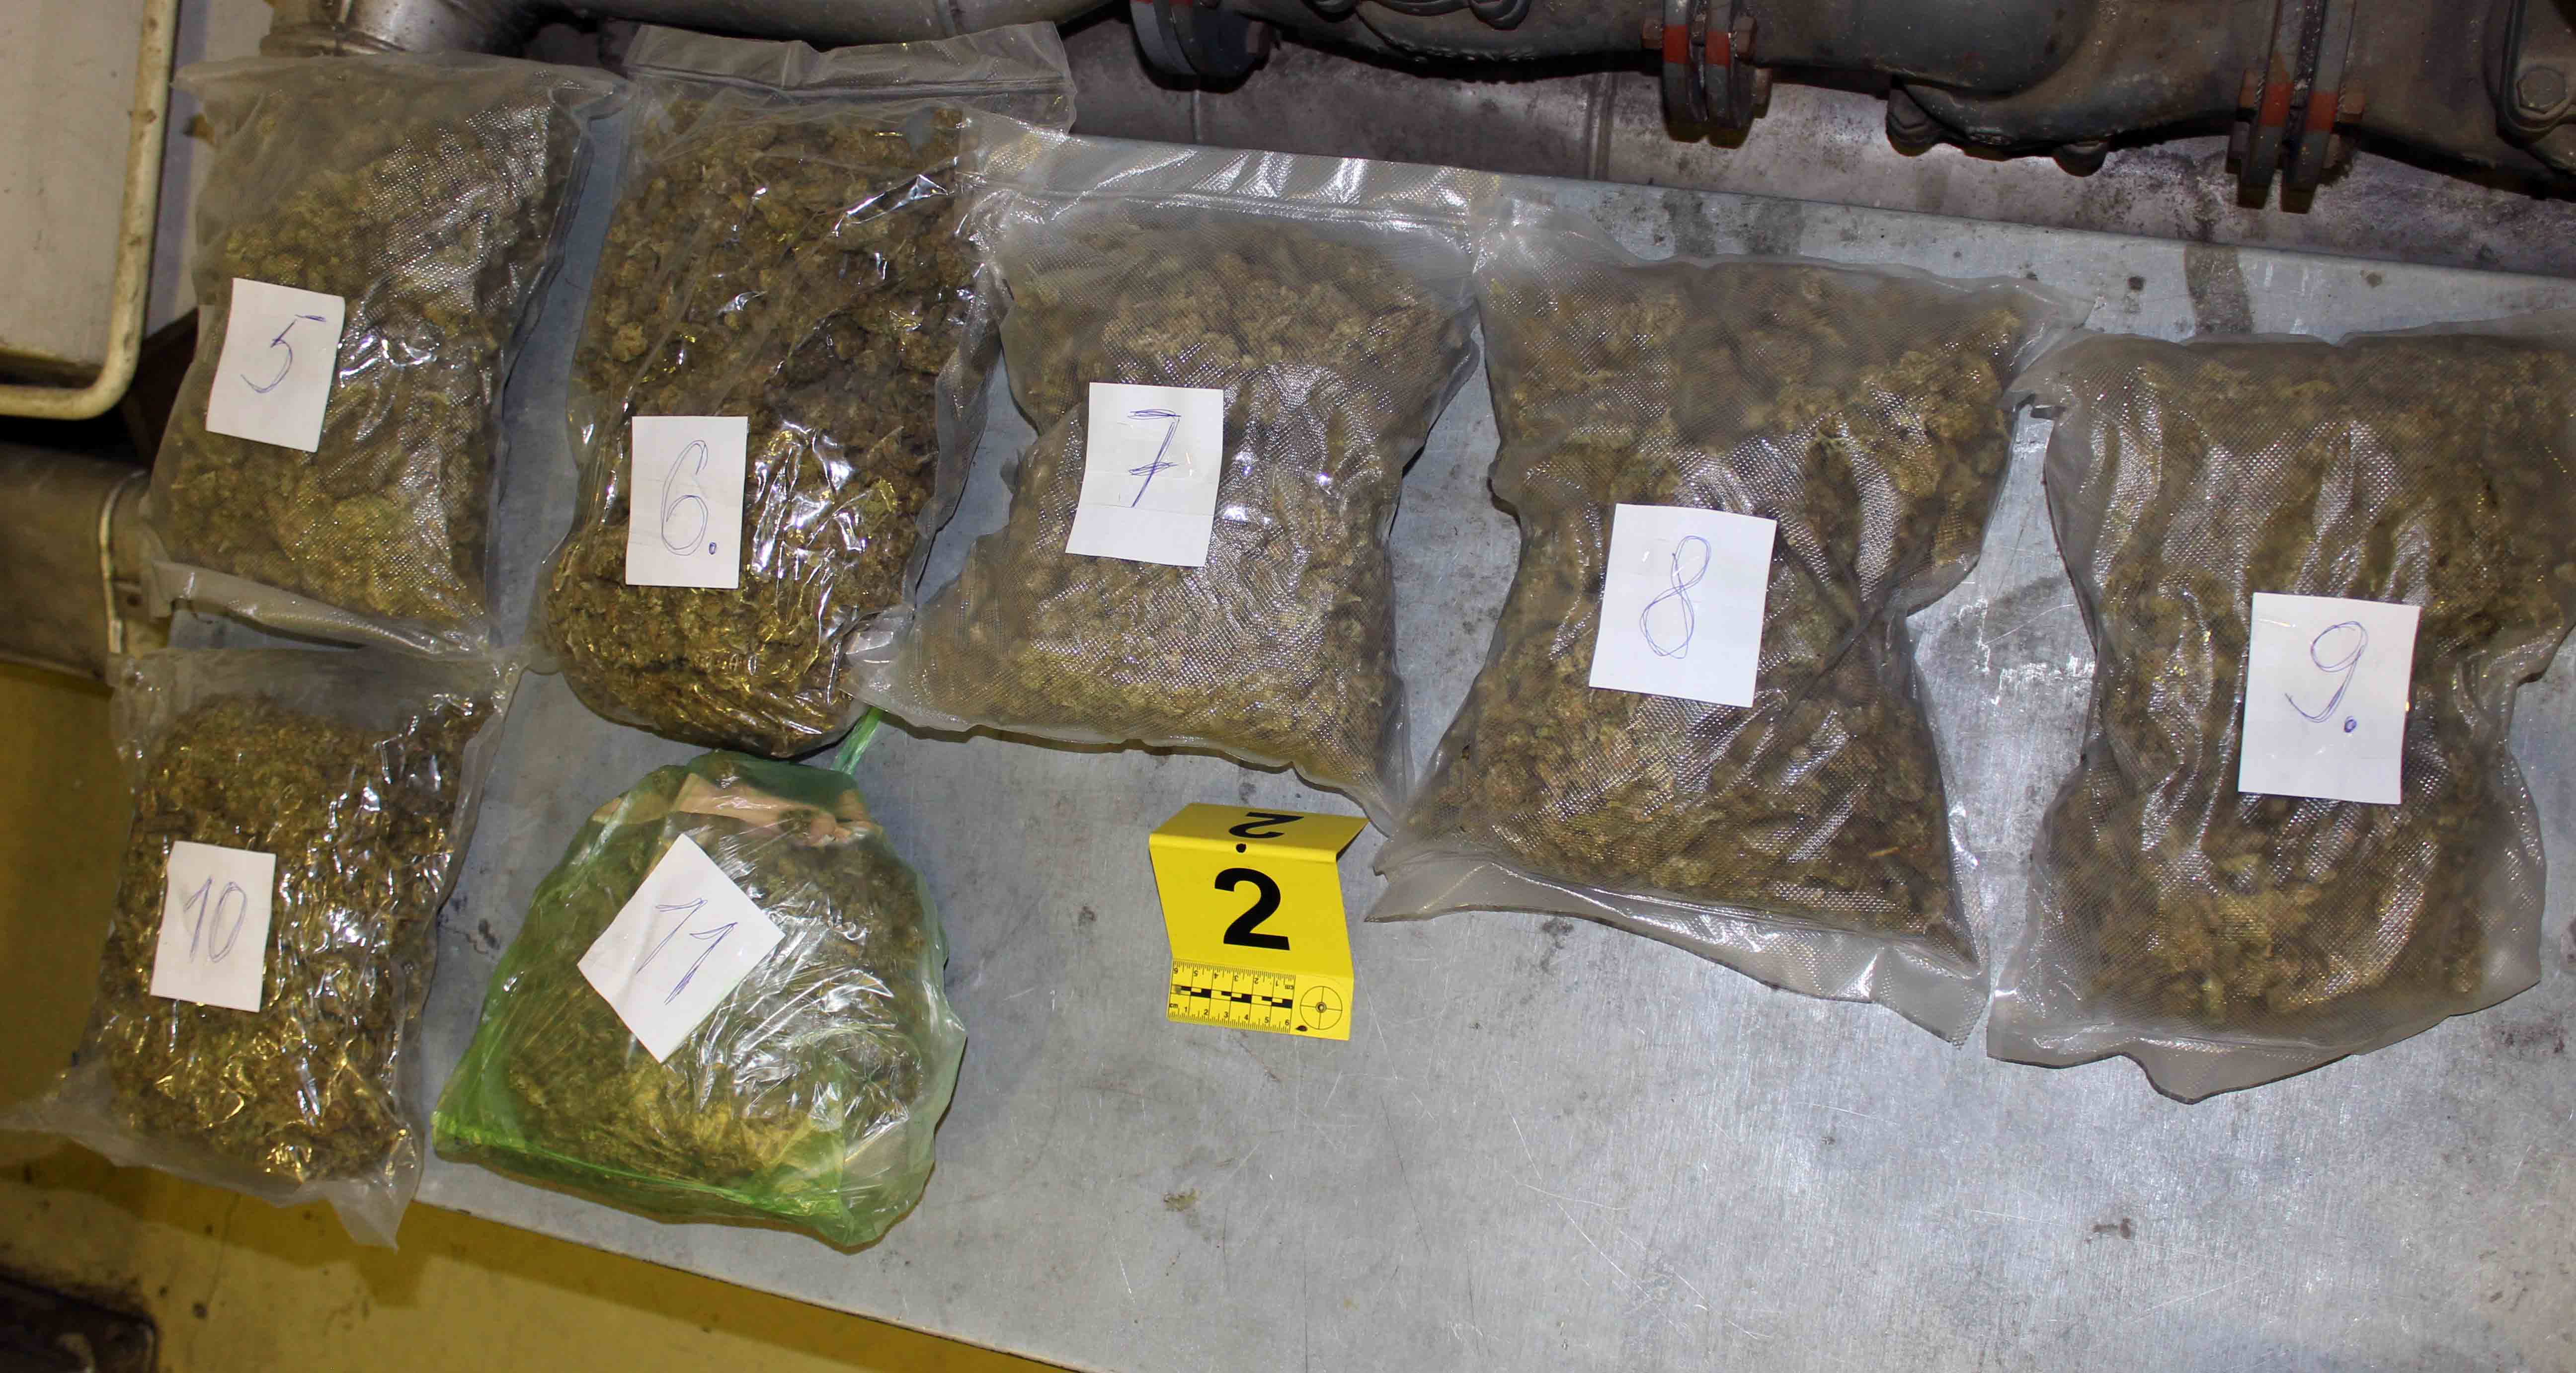 Zaplenjeno više od pet kilograma opojne droge za koju se sumnja da je marihuana